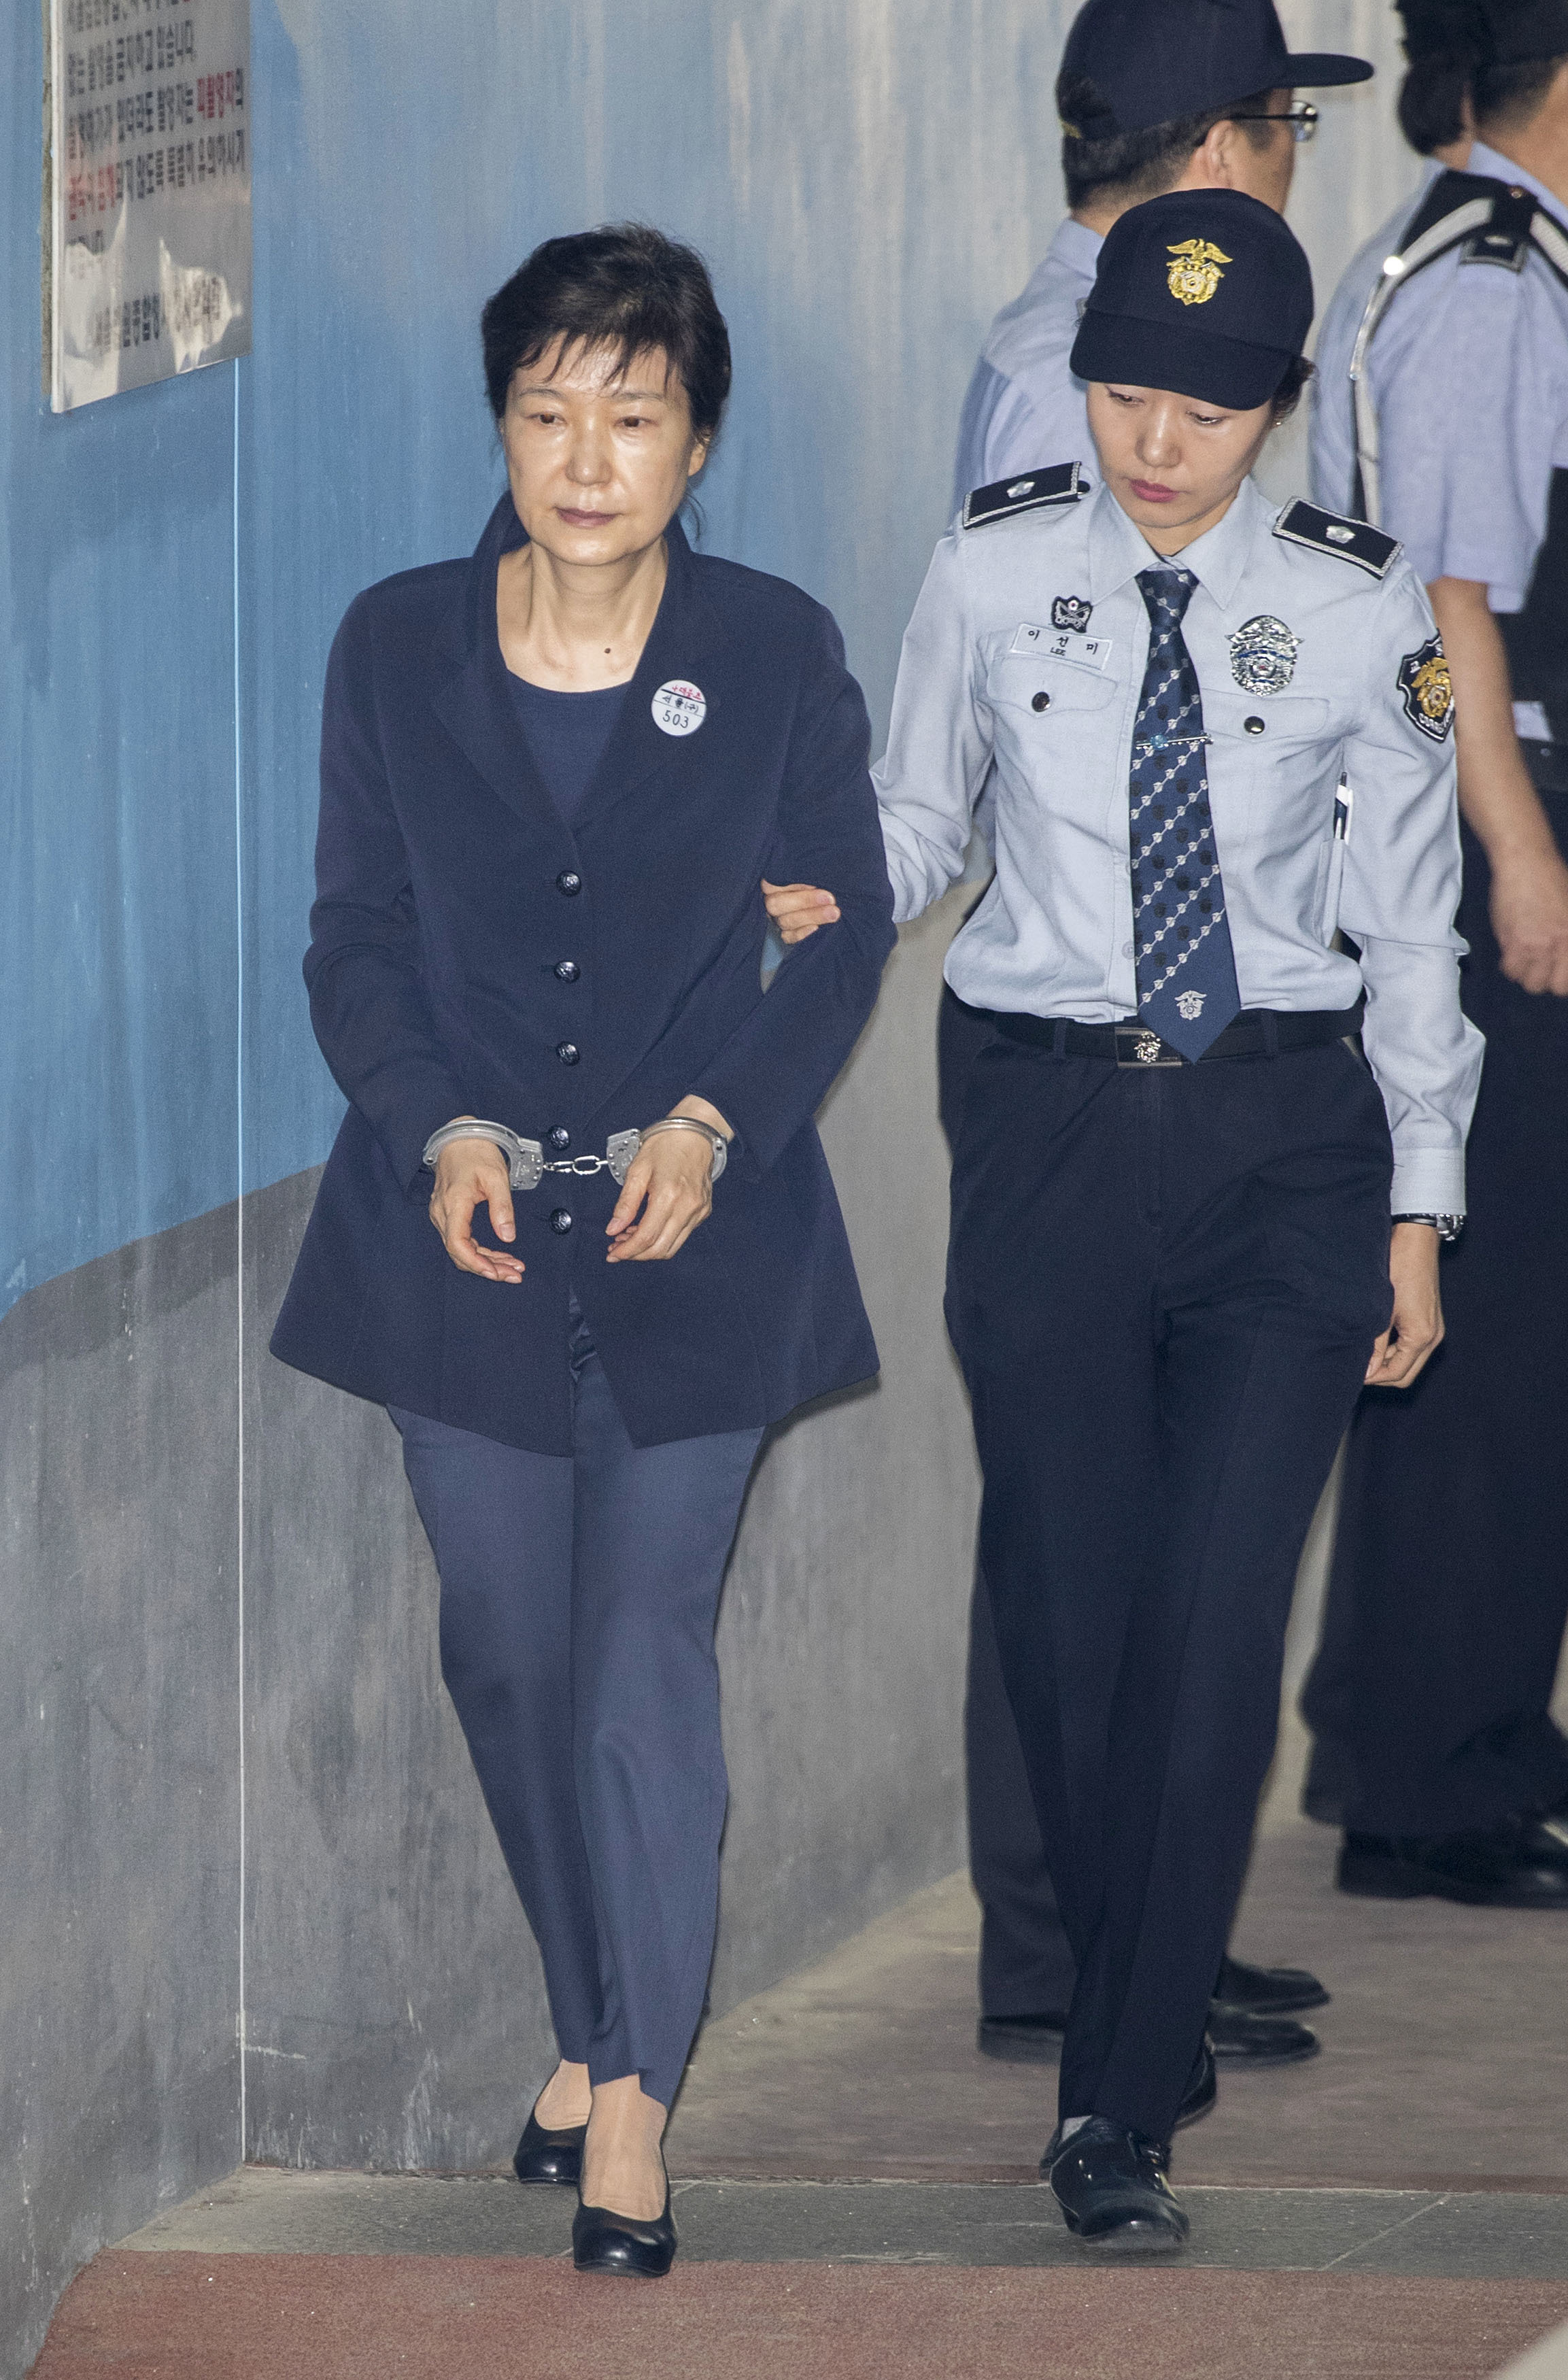 朴槿惠出庭受审 一手扶腰和狱警边走边聊精神状态见好_图片频道__中国青年网